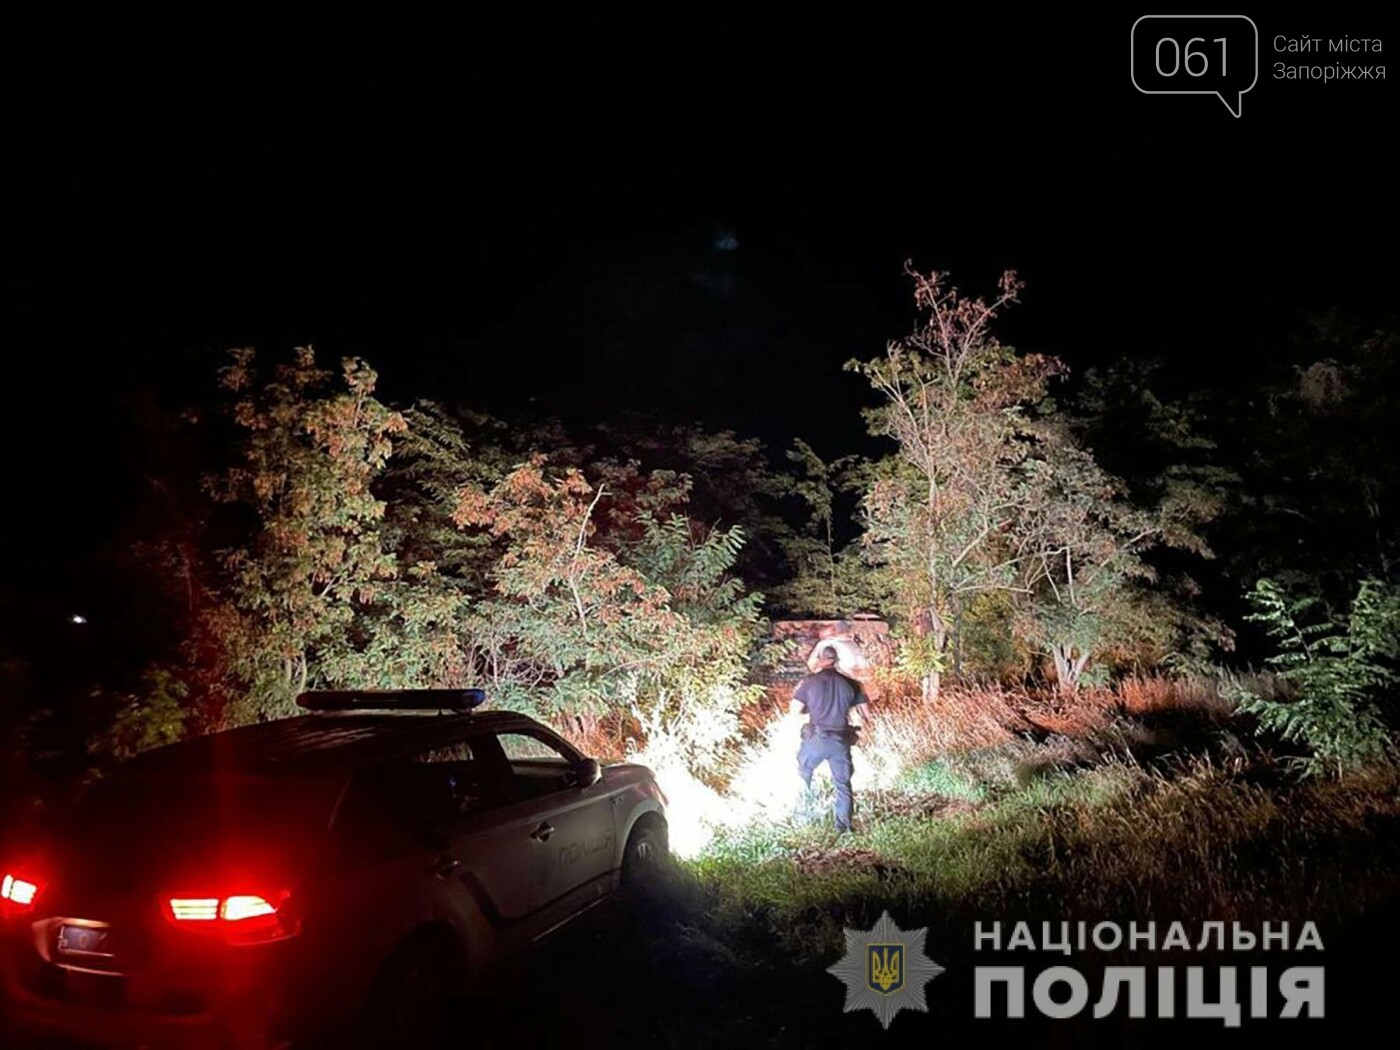 berd3 612e35b95670e - В Бердянске пьяный водитель "Тойоты" пытался скрыться от патрульных через поле, но врезался в дерево